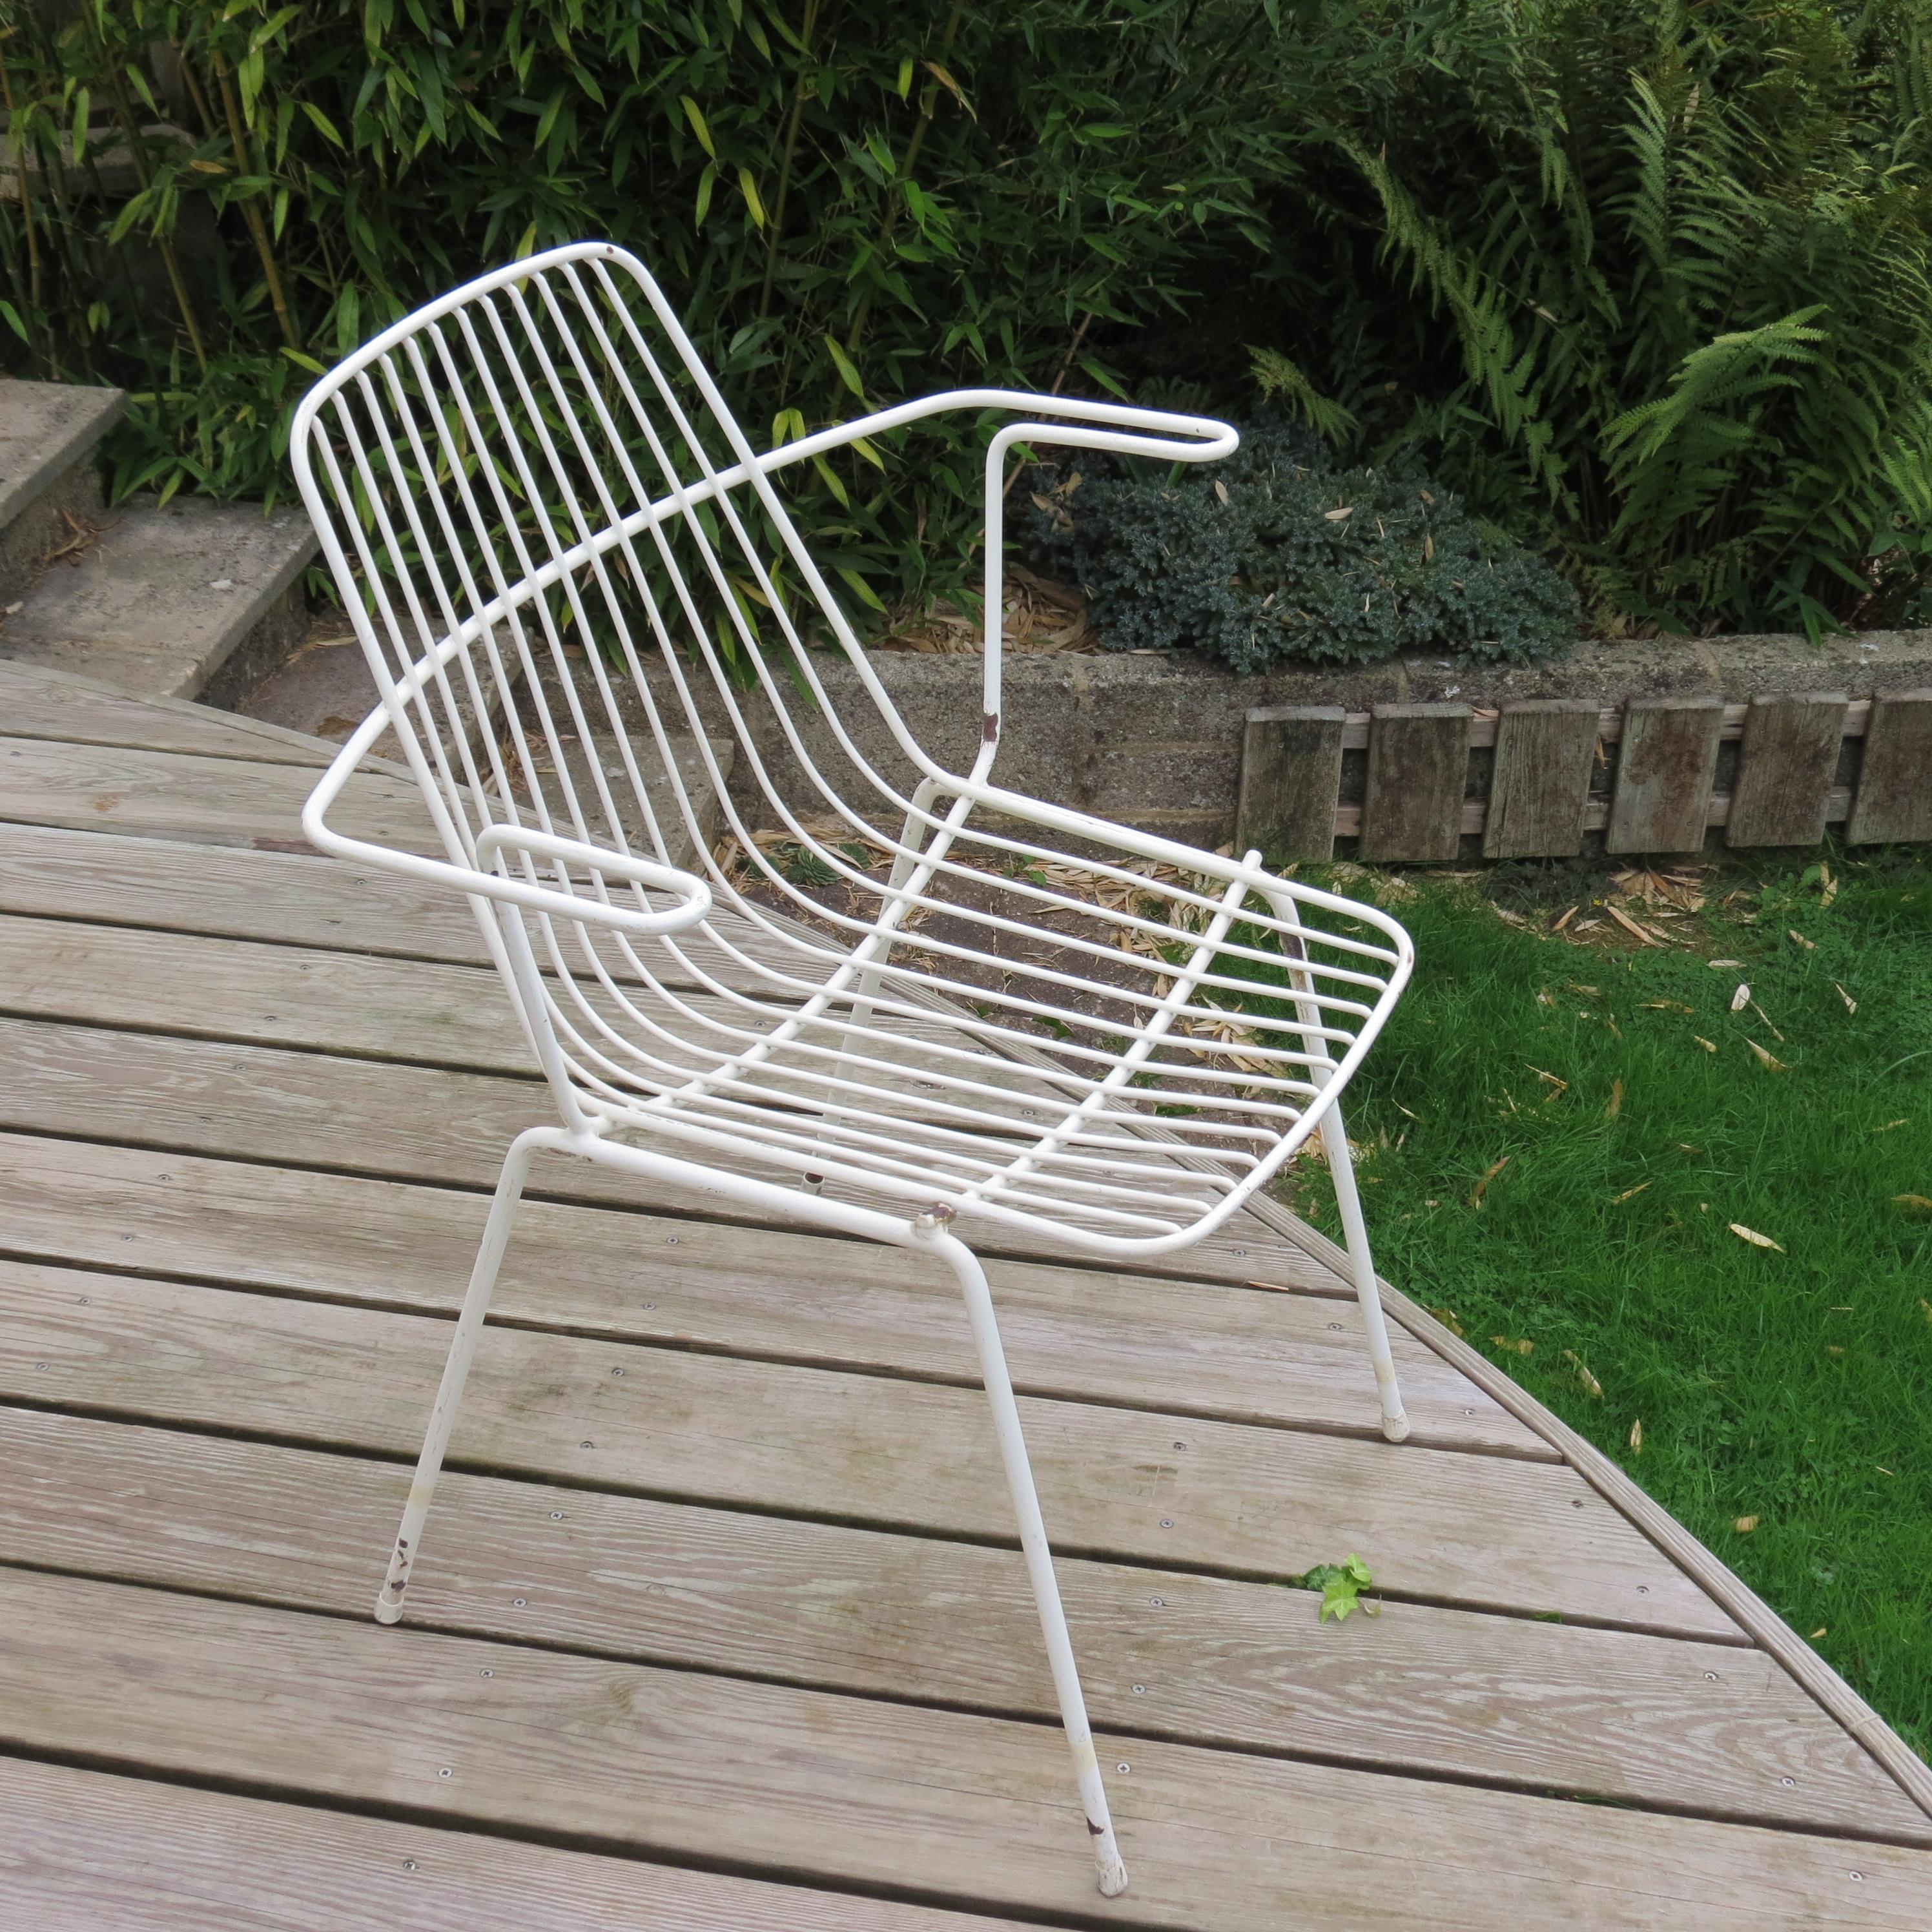 Chaise de jardin midcentury de bonne qualité et très élégante. Merveilleuse chaise de jardin, datant des années 1960, fabriquée à partir d'une tige d'acier plastifiée. En bon état vintage, conserve le revêtement en plastique blanc d'origine,